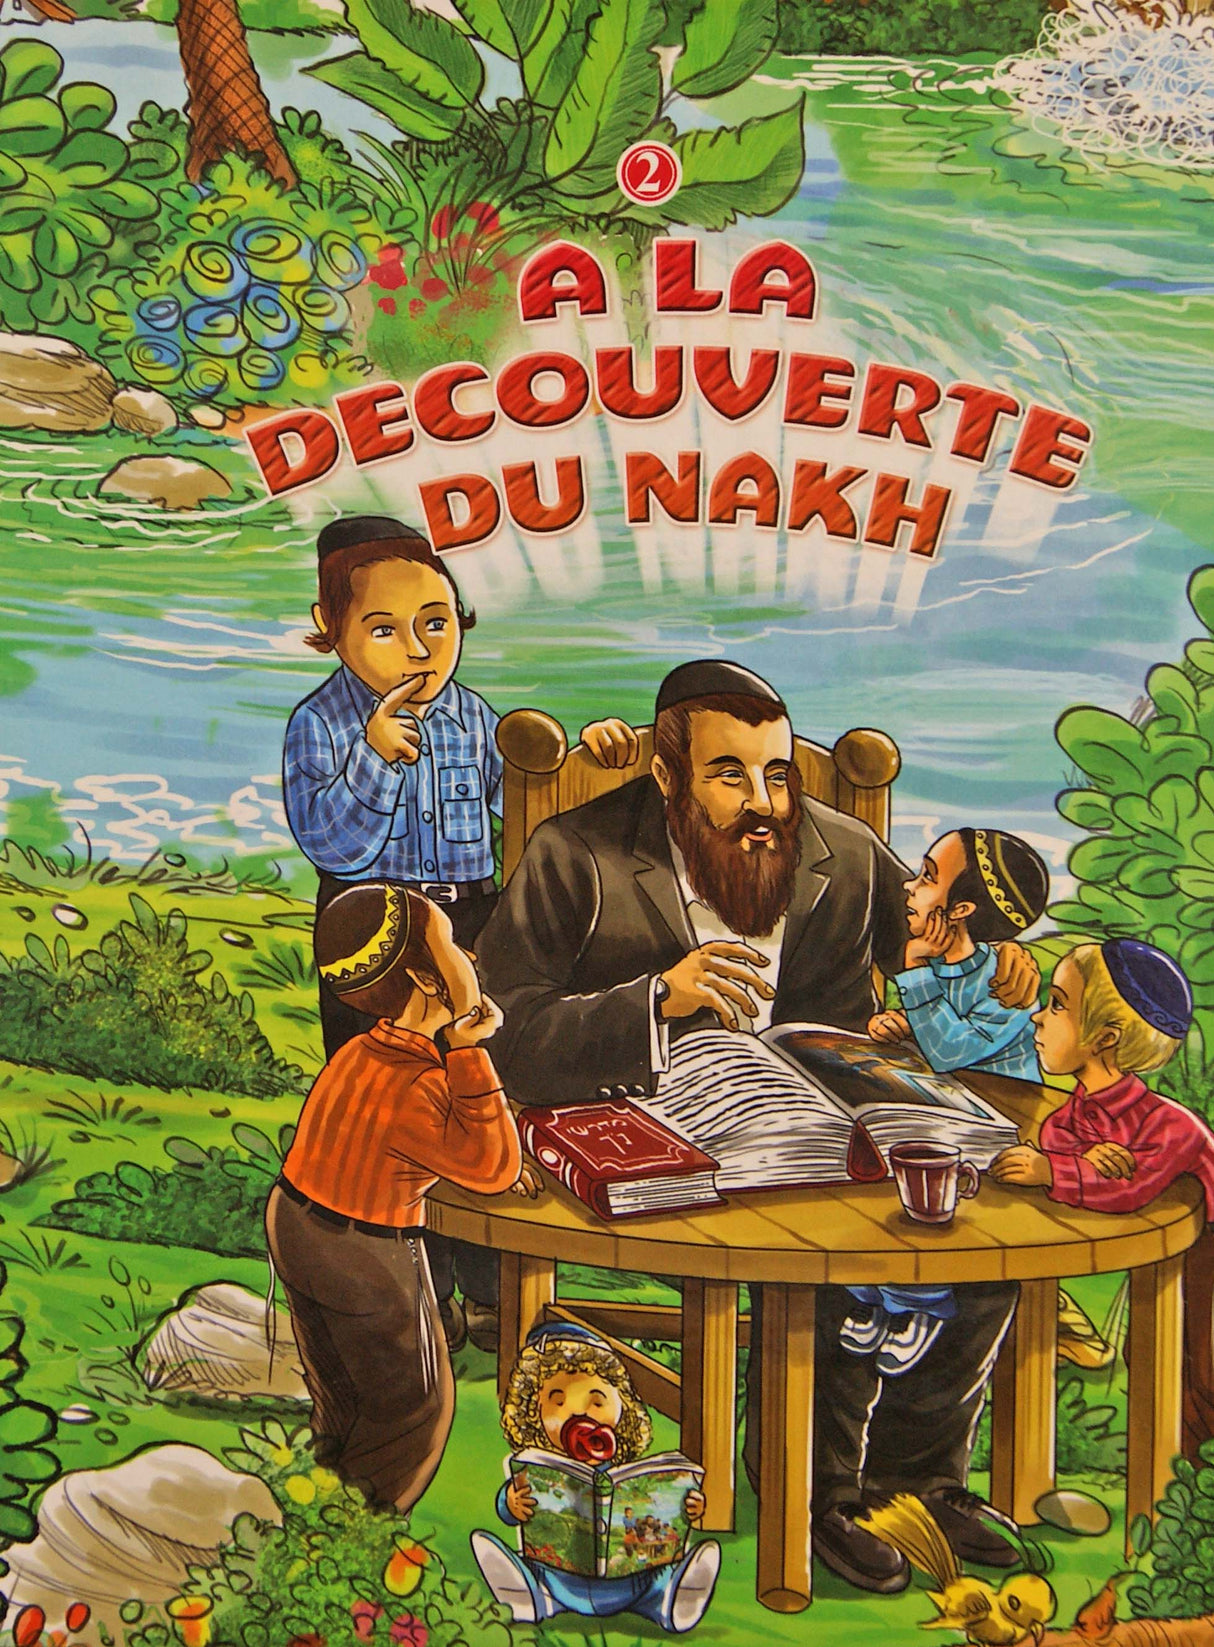 A La Decouverte Du Nakh vol 2